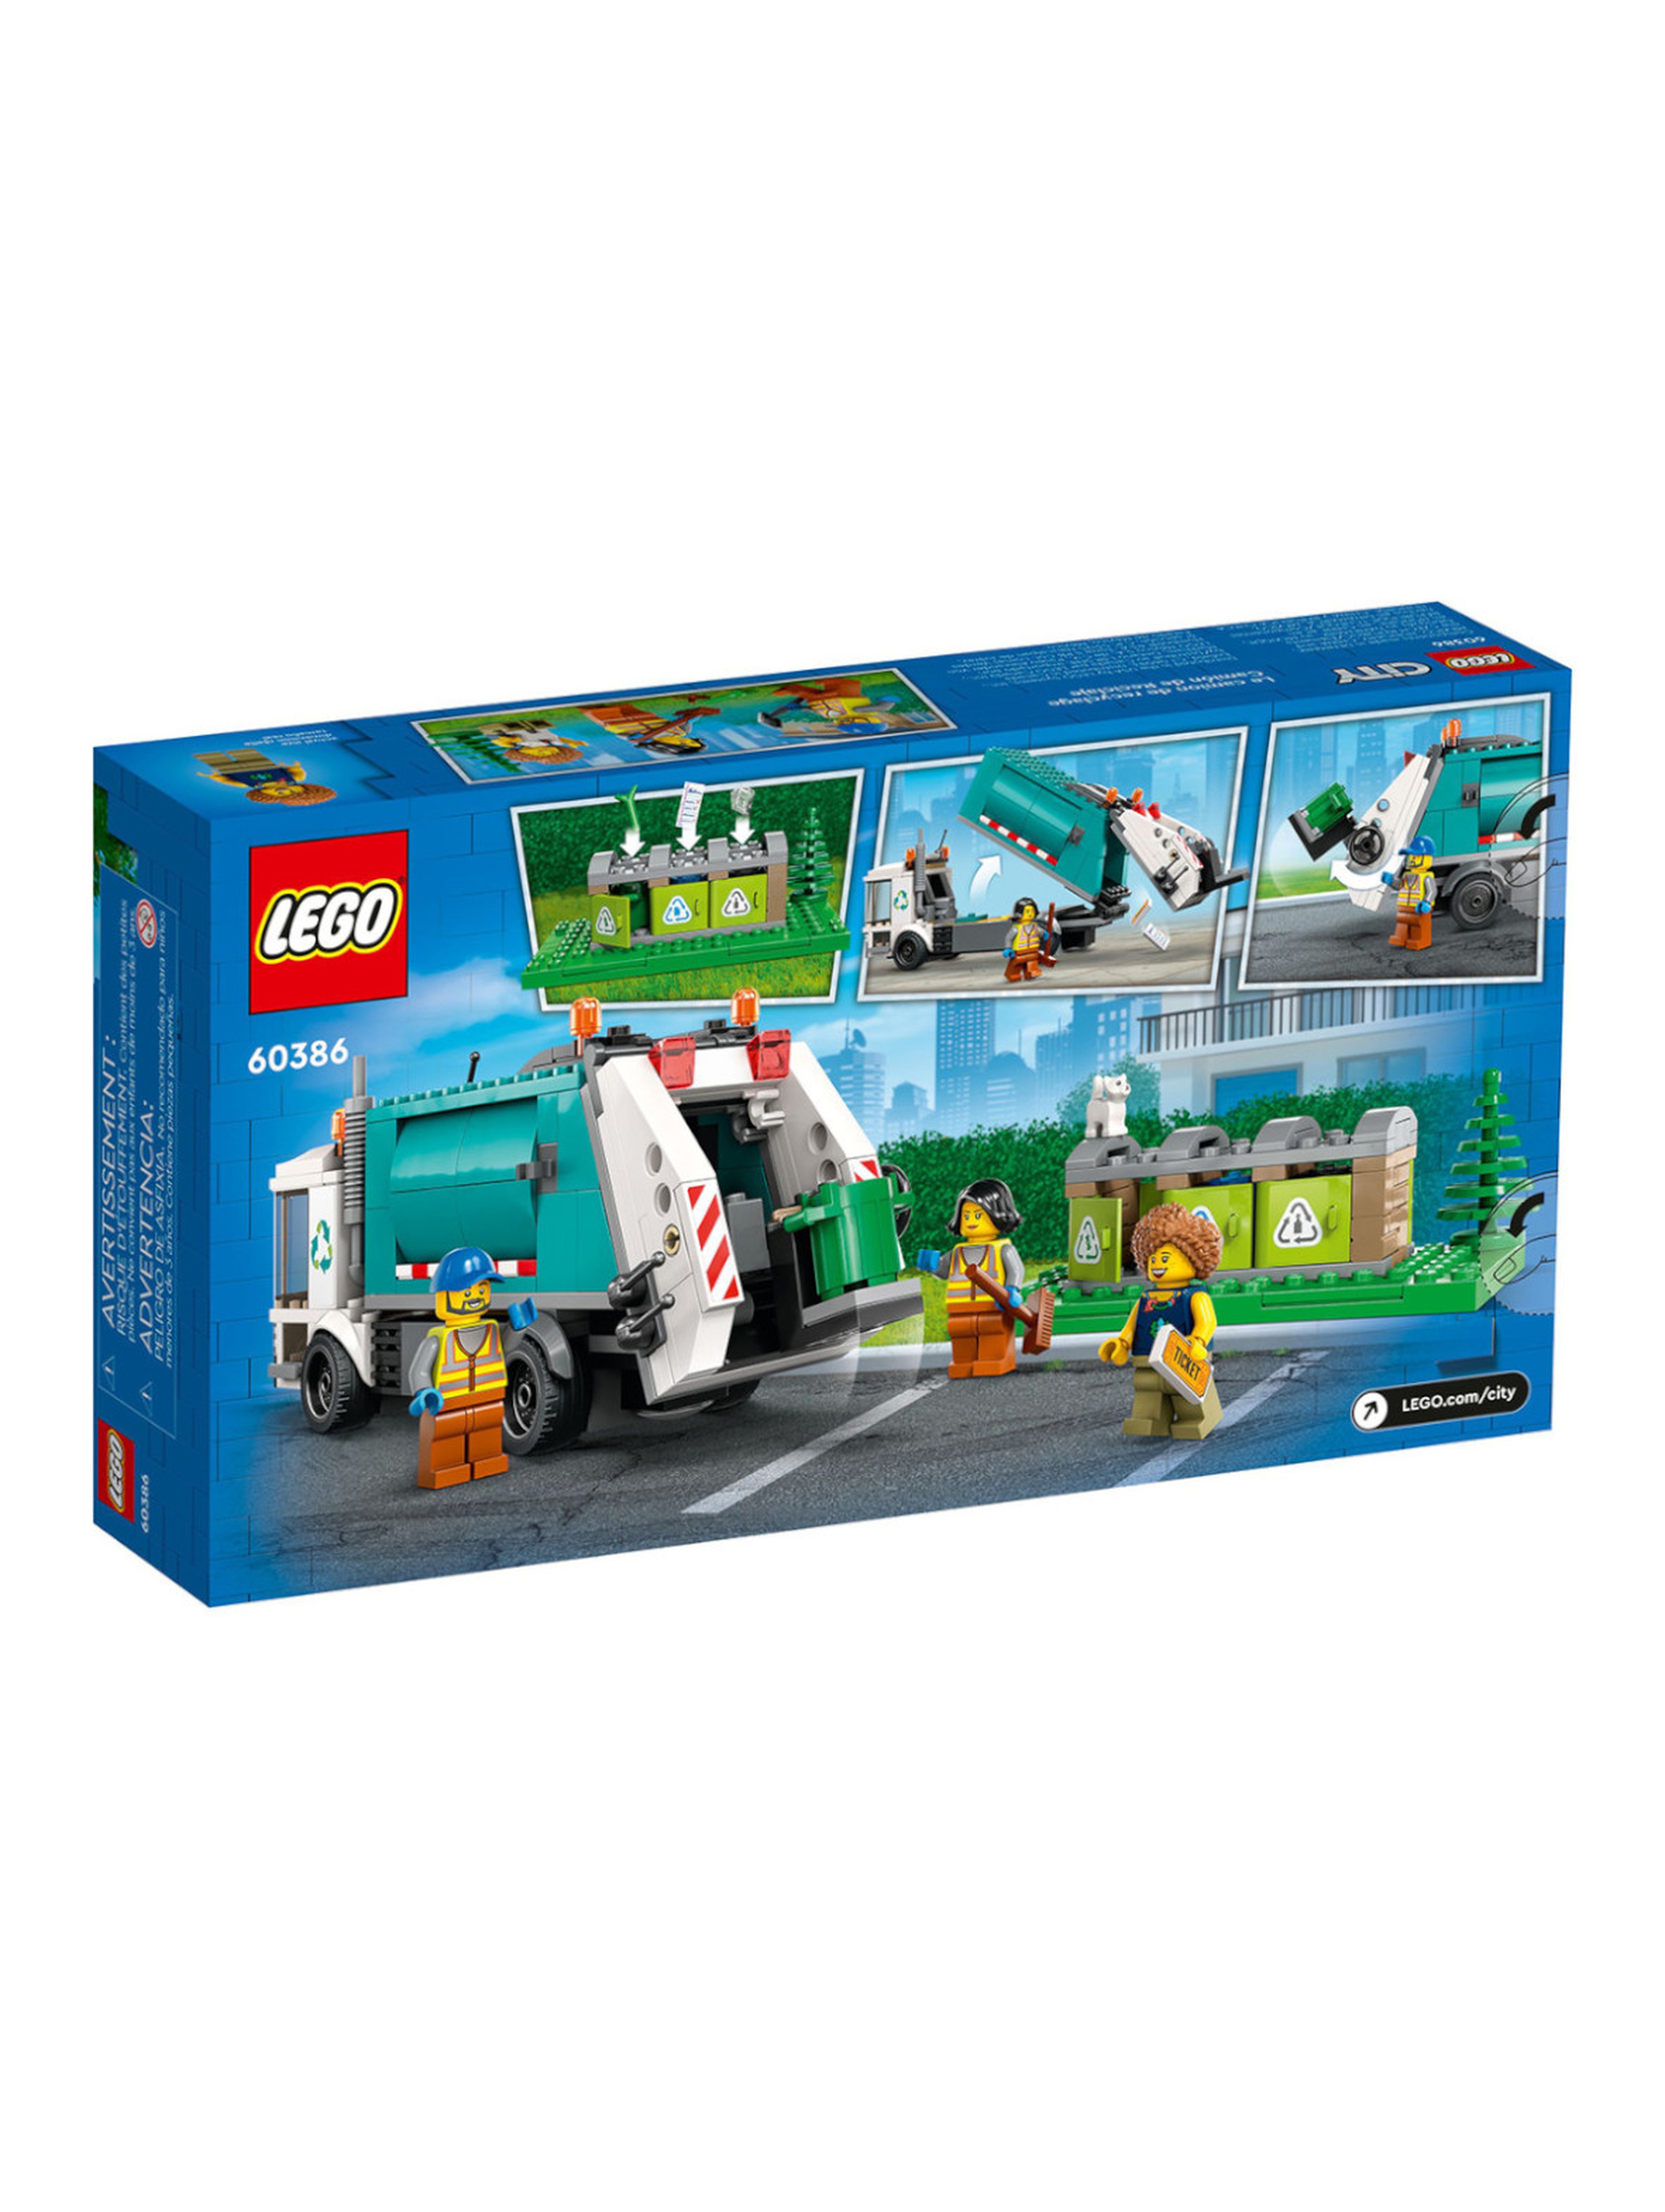 Klocki LEGO City 60386 Ciężarówka recyklingowa - 261 elementów, wiek 5 +